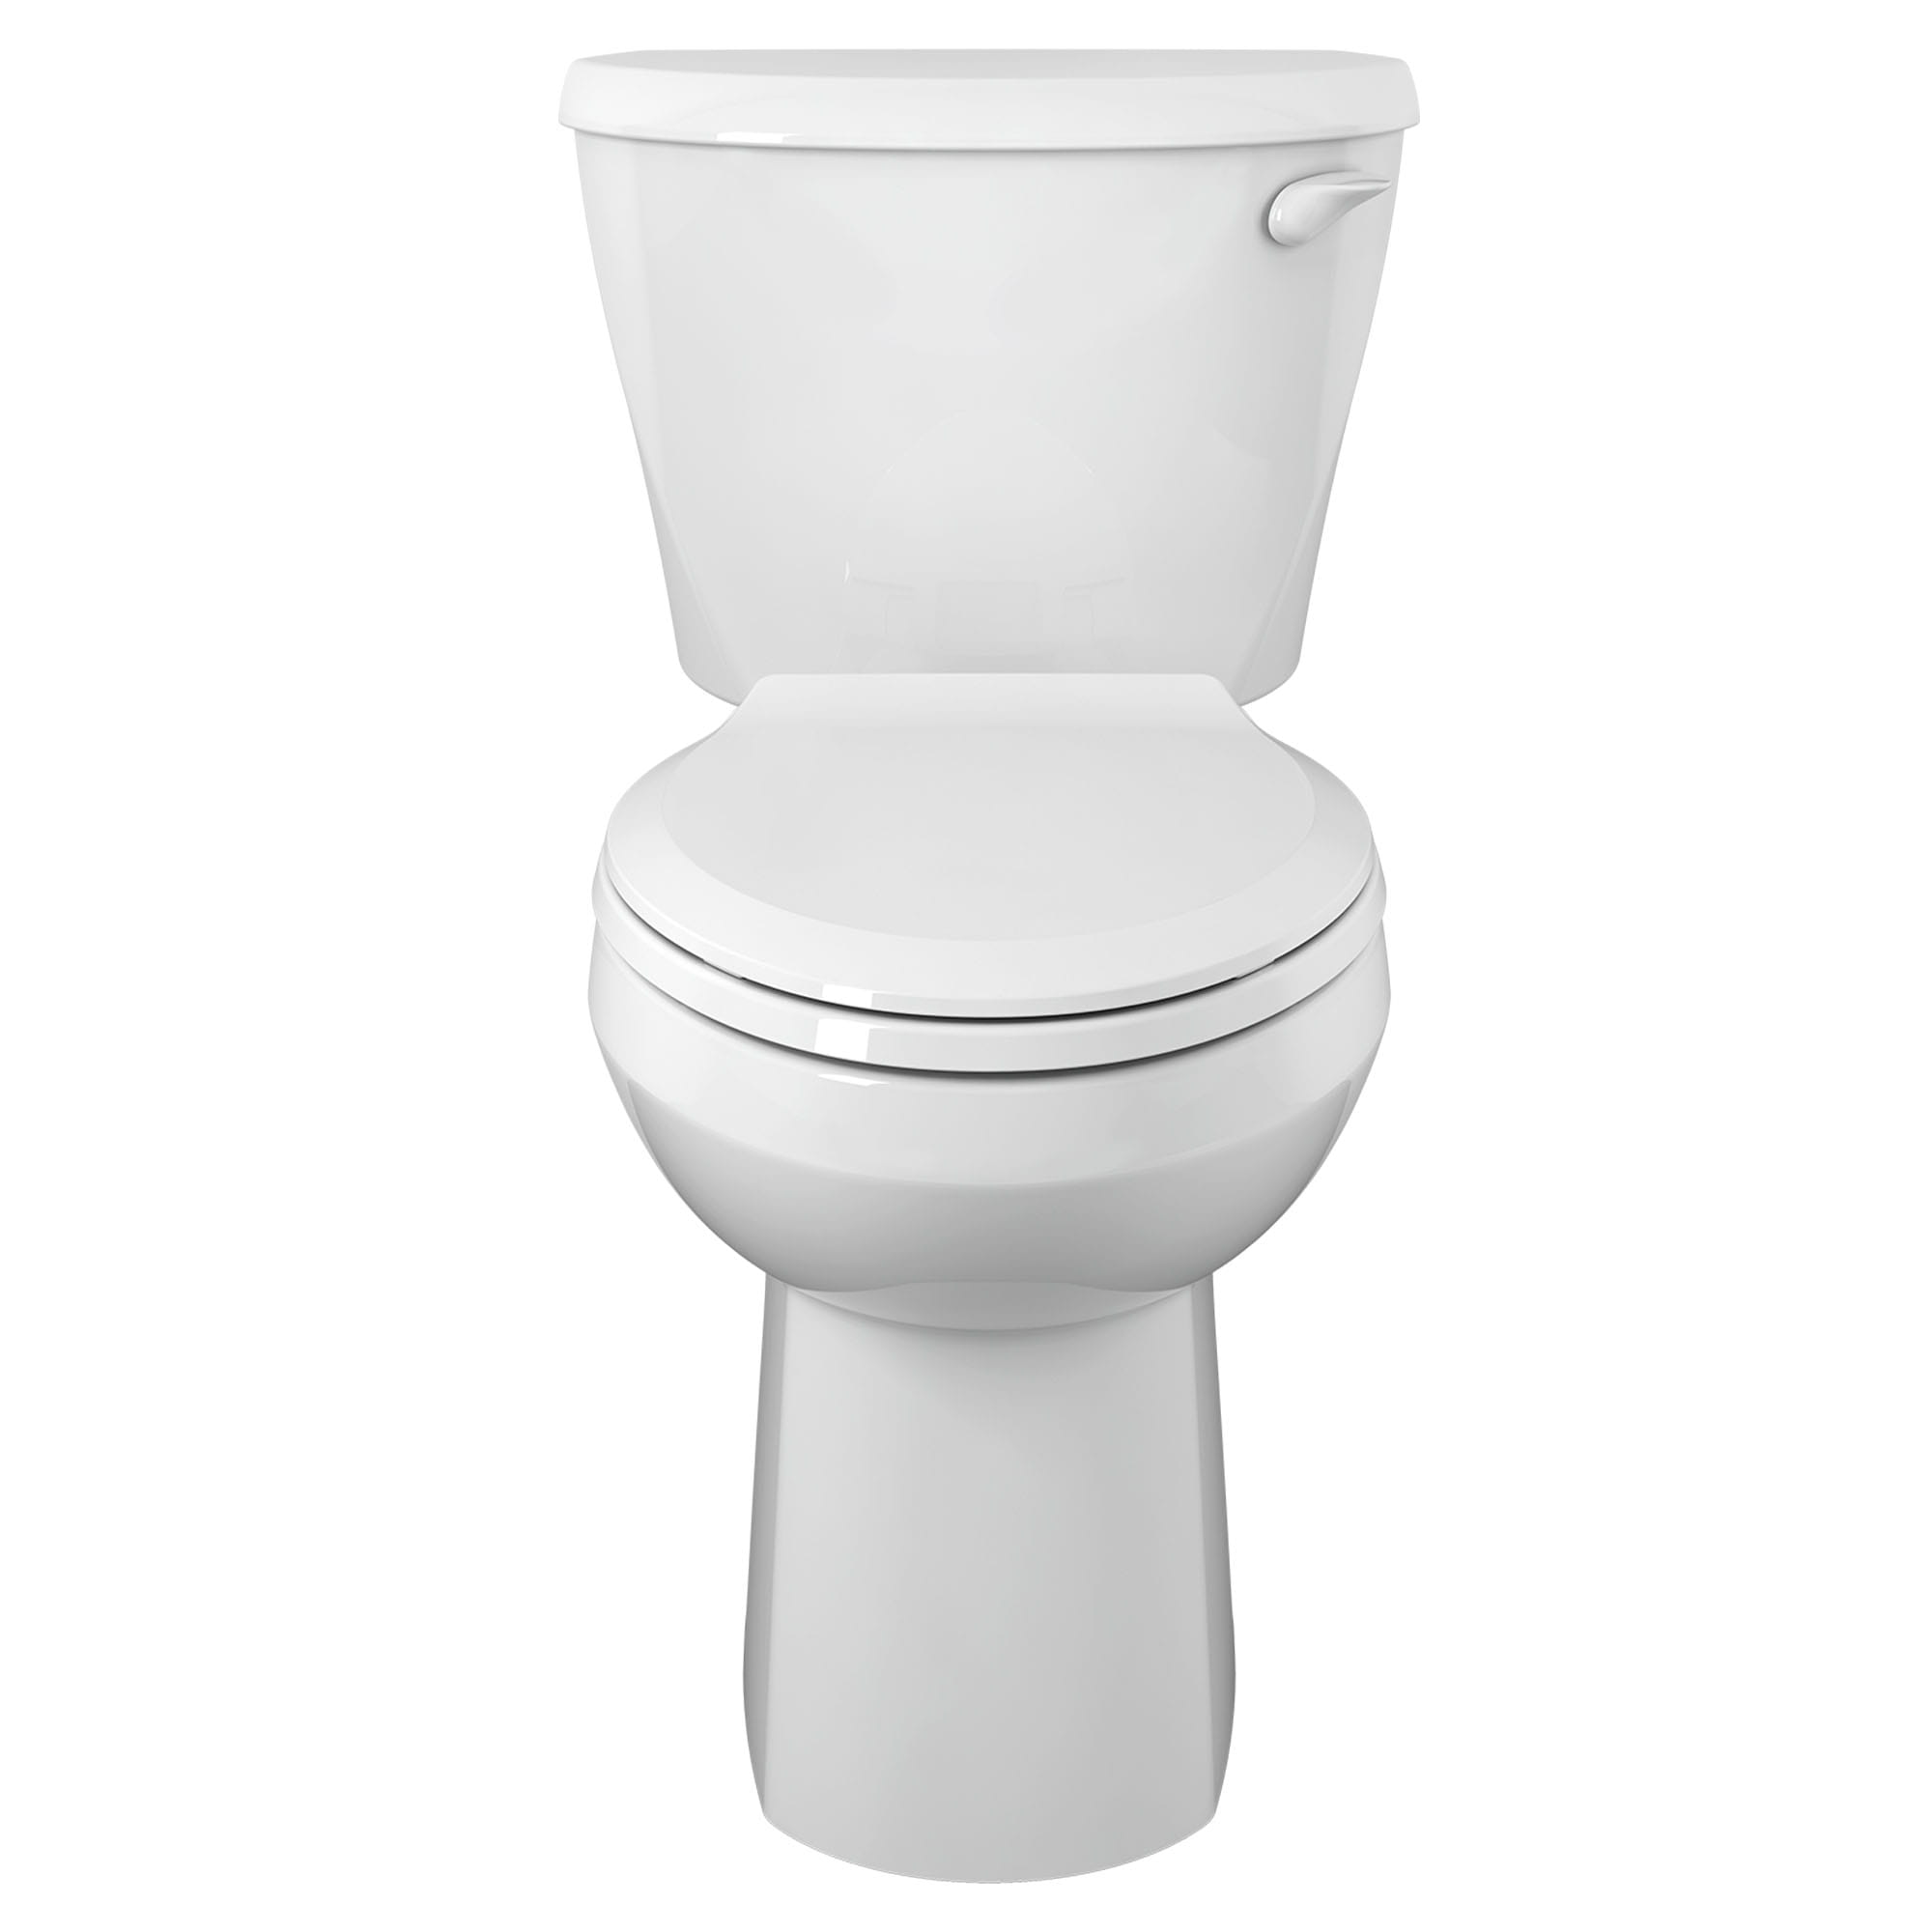 Toilette Colony, 2 pièces, 1,28 gpc/4,8 lpc, à cuvette allongée à hauteur de chaise, sans siège, levier de déclenchement à droite, sans siège